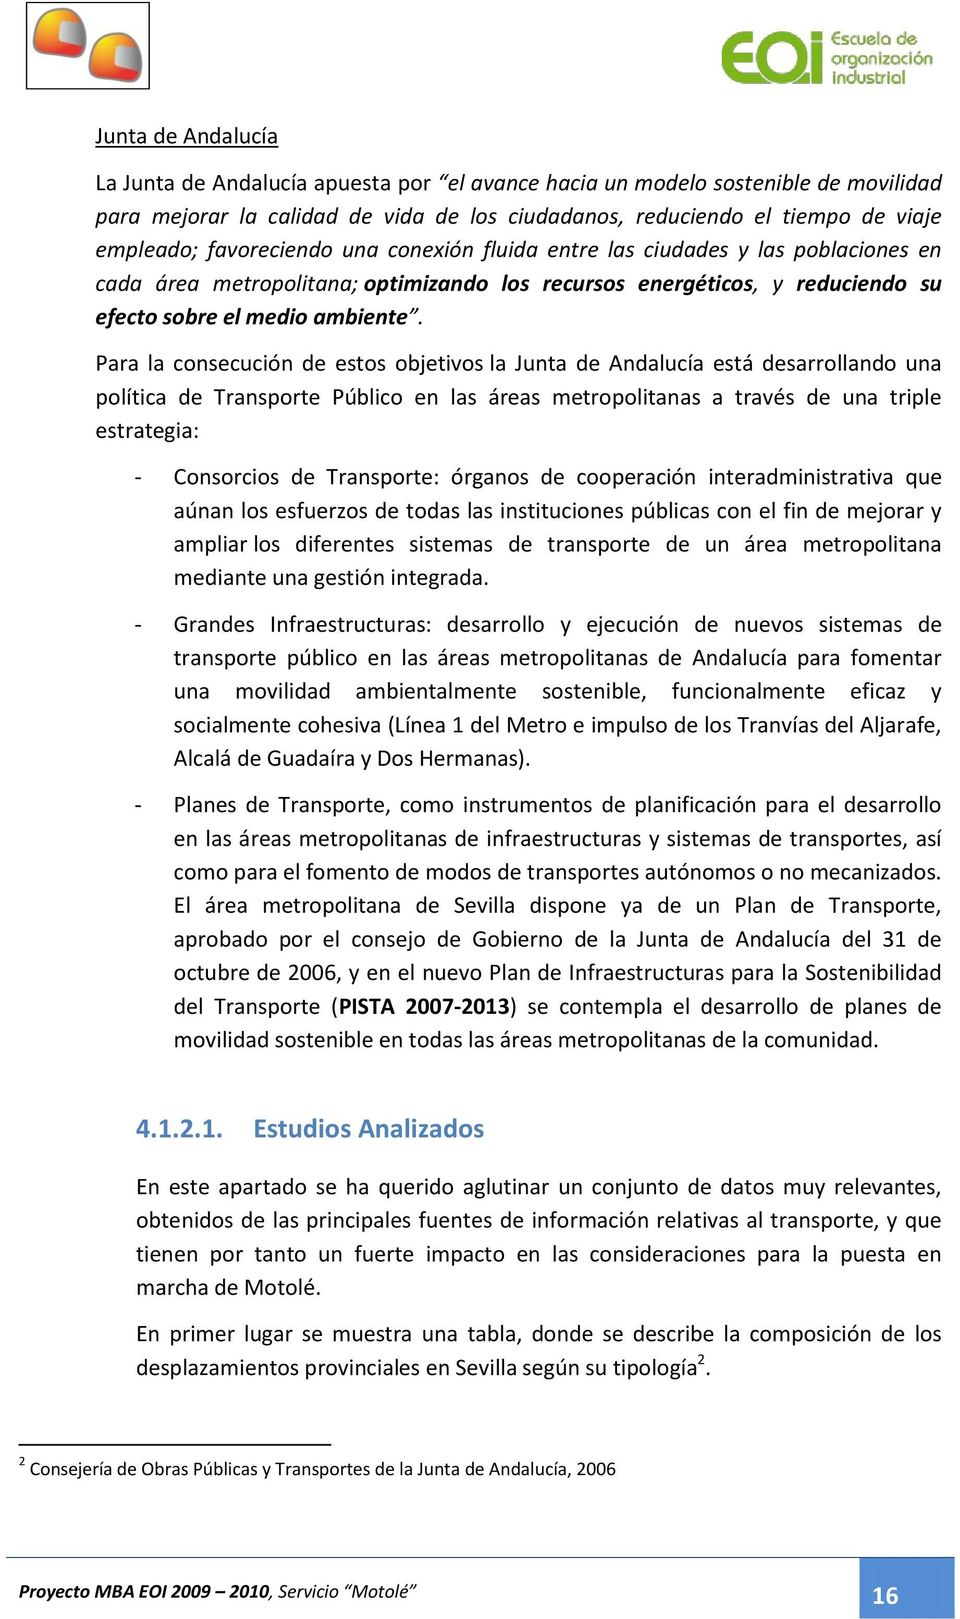 Para la consecución de estos objetivos la Junta de Andalucía está desarrollando una política de Transporte Público en las áreas metropolitanas a través de una triple estrategia: - Consorcios de